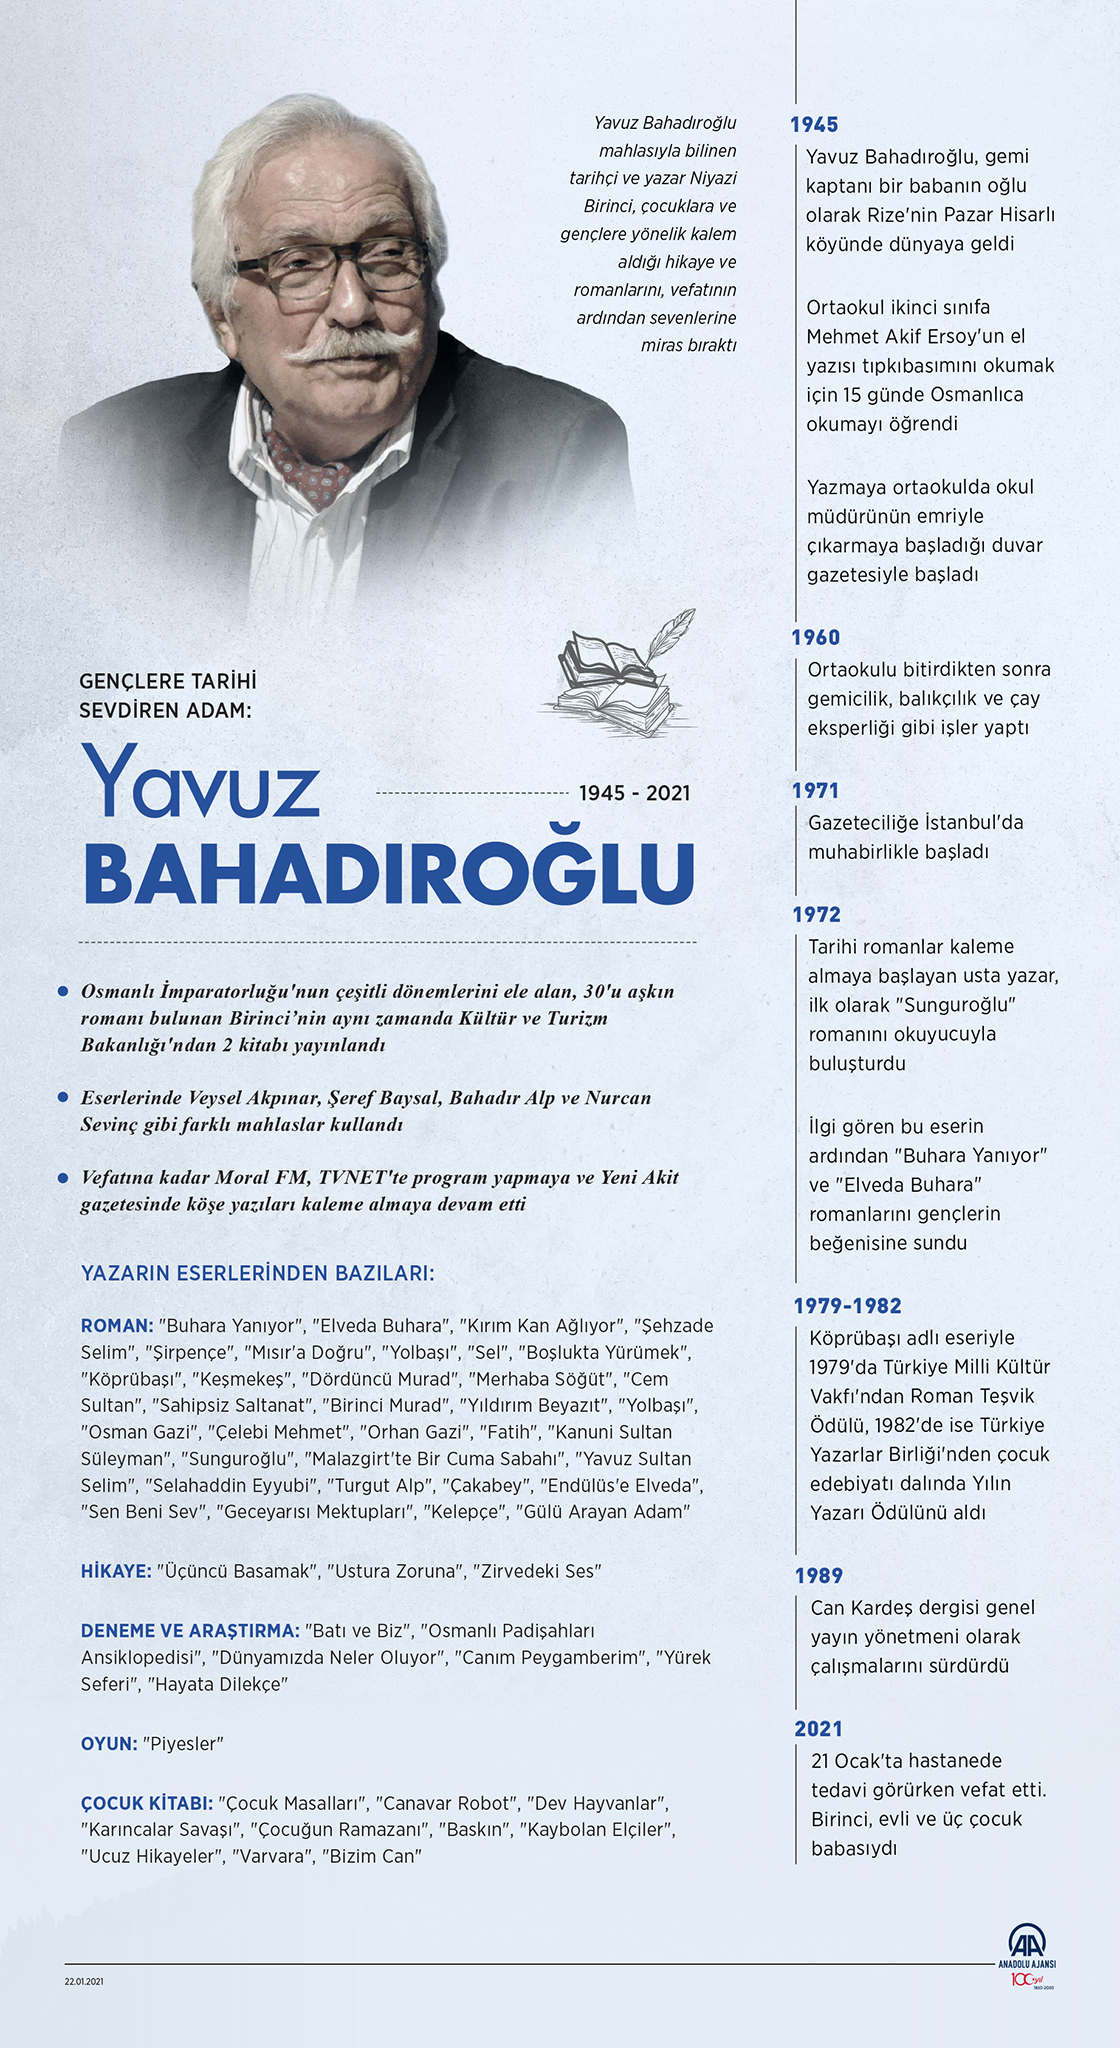 Gençlere tarihi sevdiren adam: Yavuz Bahadıroğlu